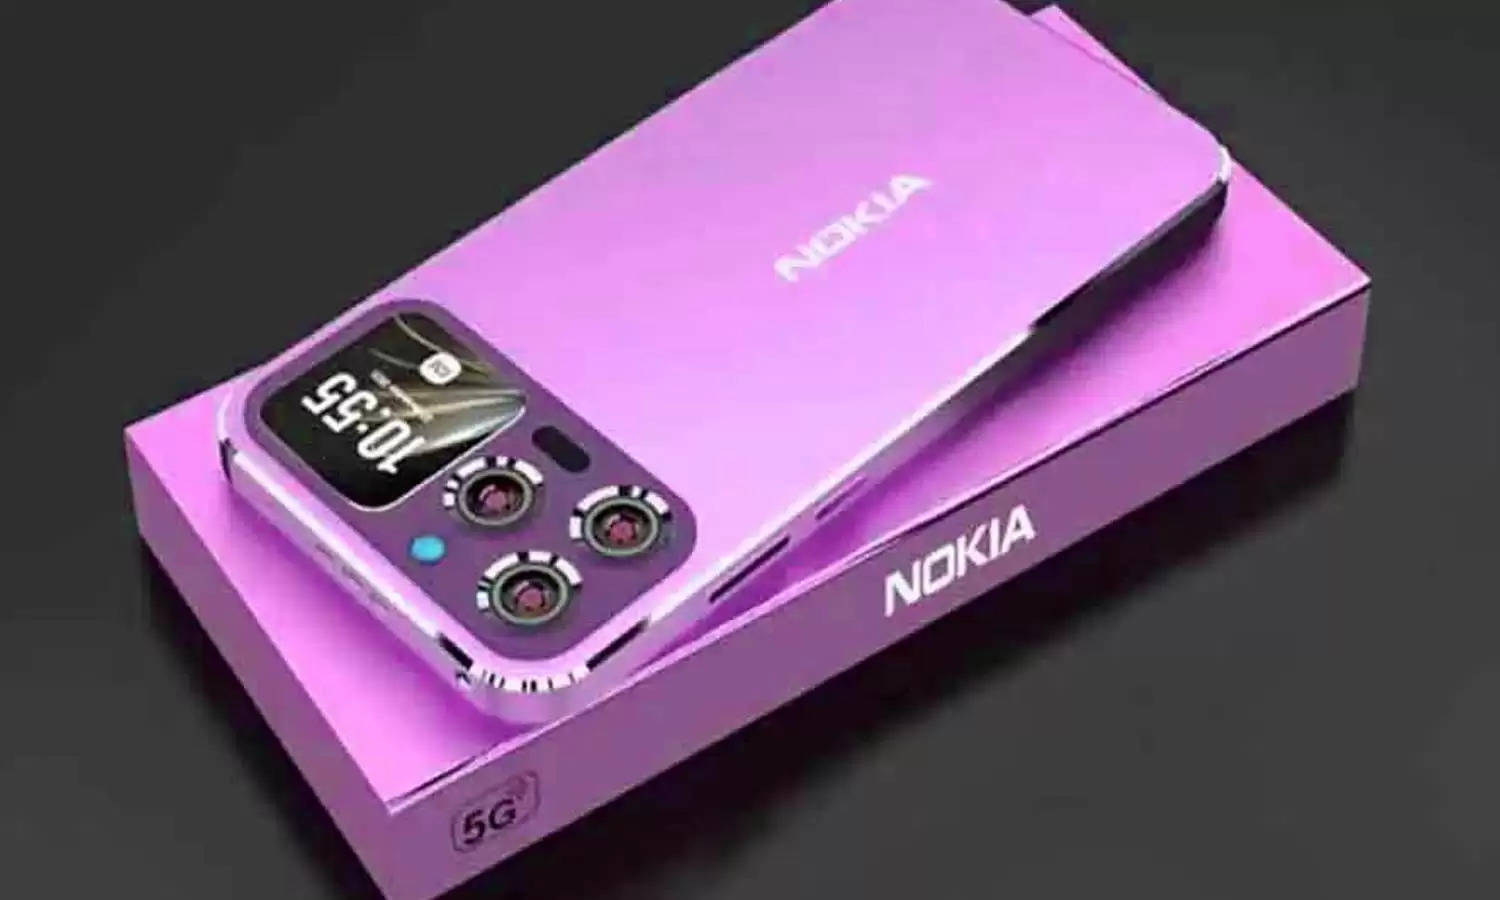 108MP कैमरे के साथ NOKIA के इस स्मार्टफ़ोन ने छुड़ाए Oppo, Vivo के पसीने, जानिये कीमत